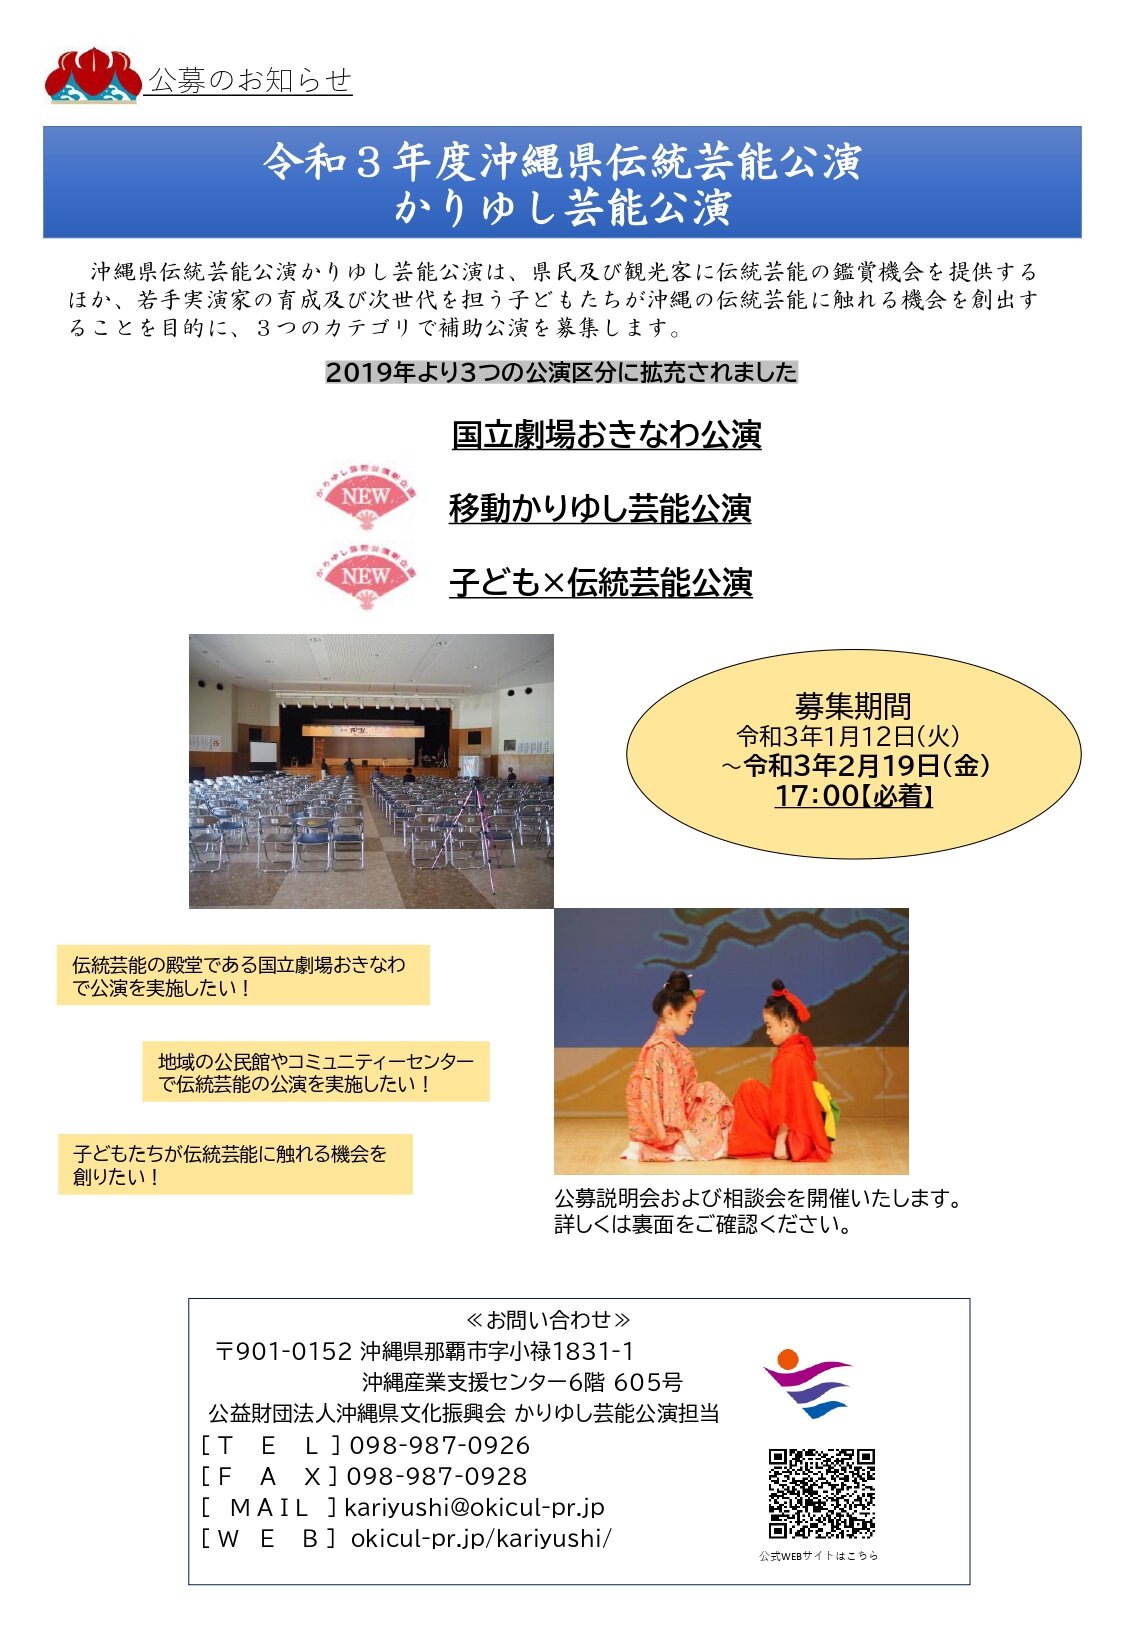 令和３年度沖縄県伝統芸能公演（かりゆし芸能公演）公募情報について